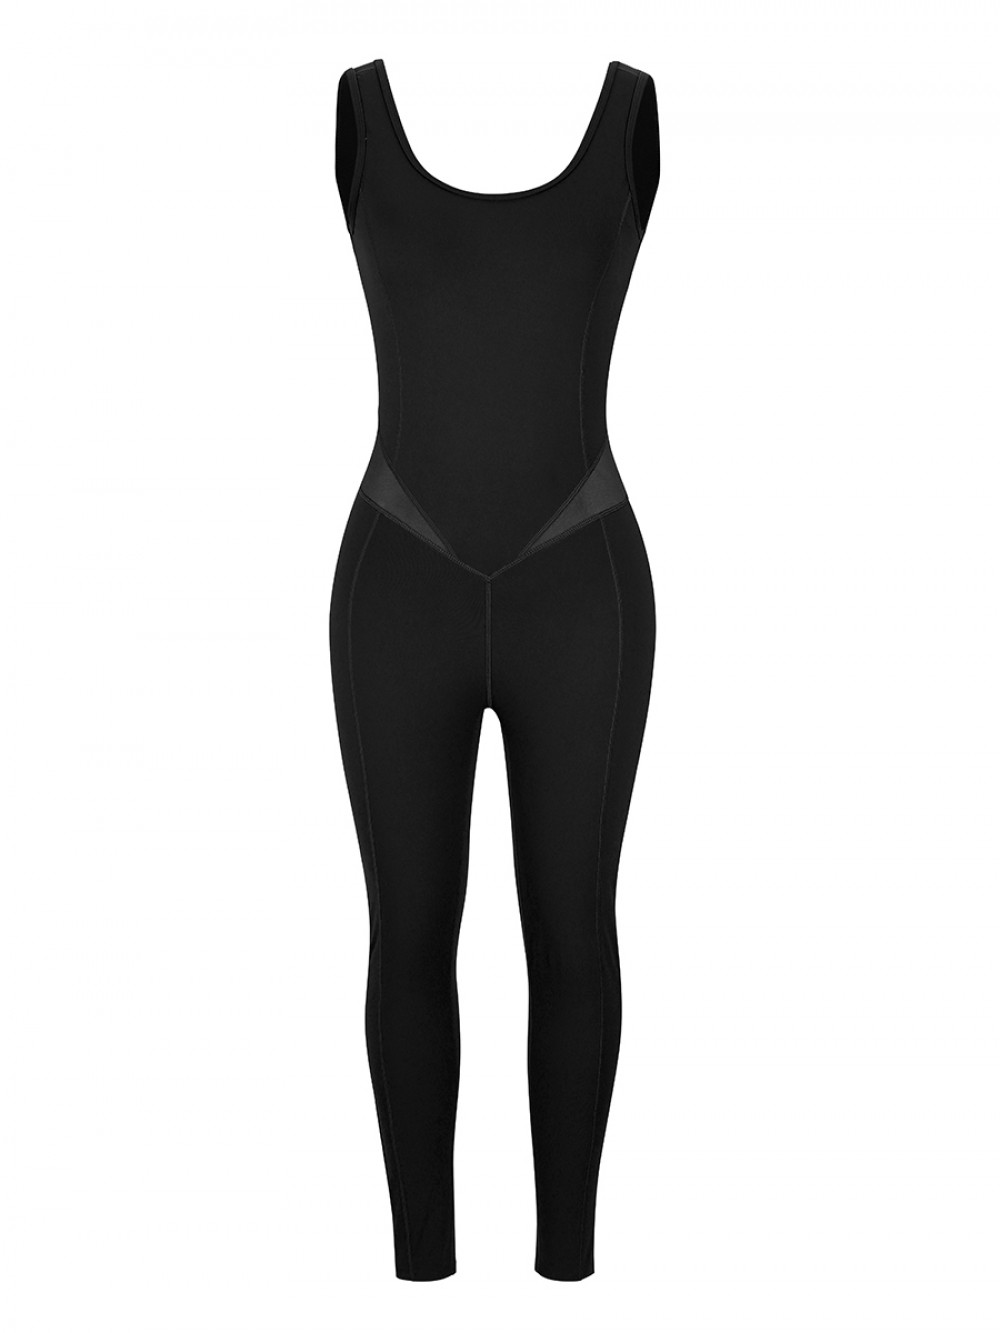 Black Running Bodysuit Wide Strap Ankle Length For Exercising